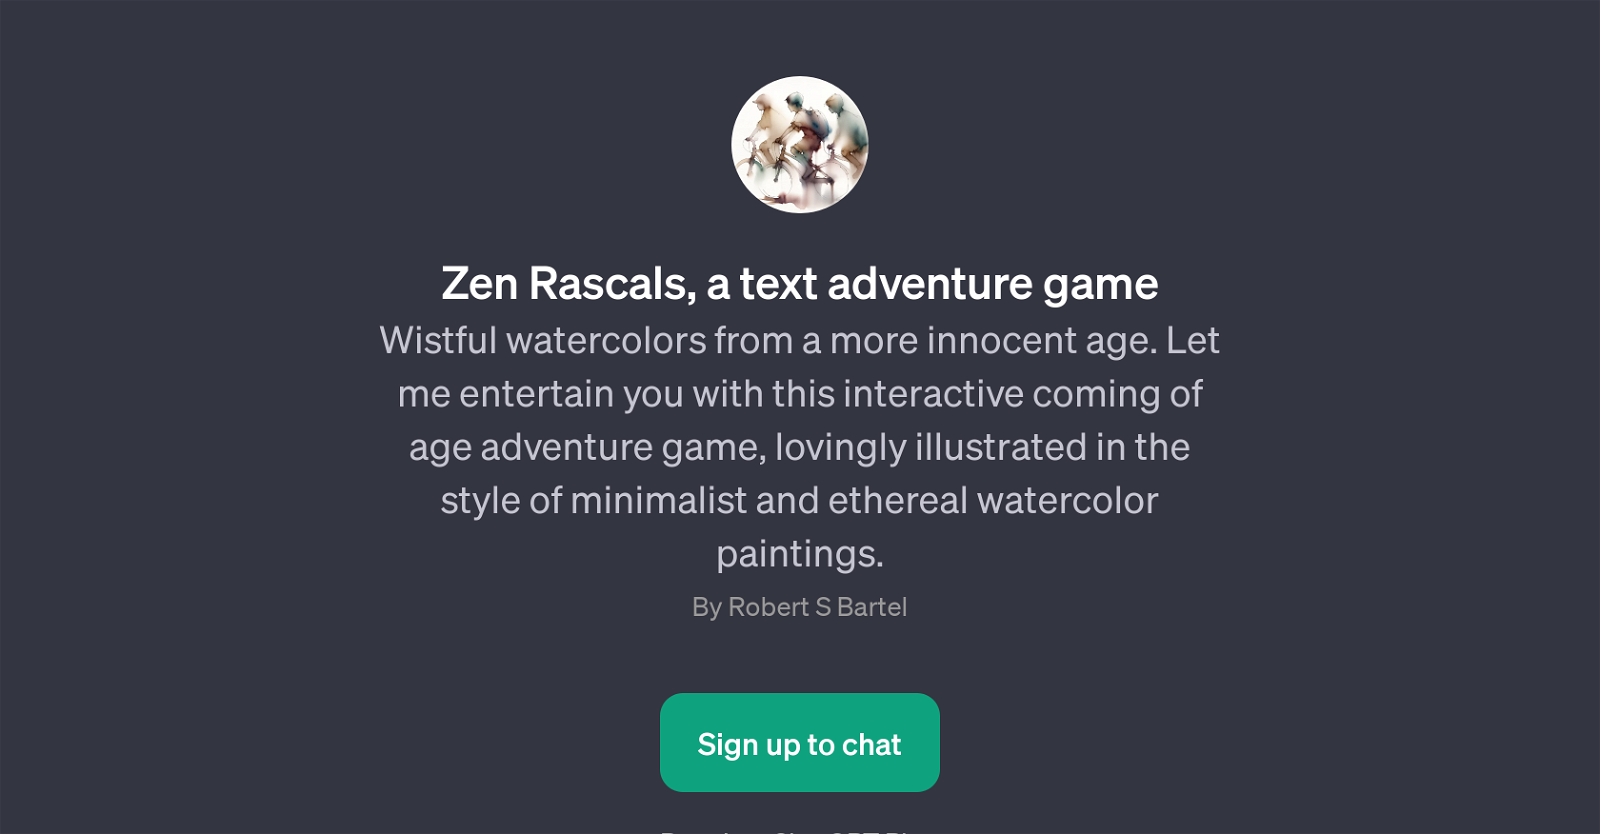 Zen Rascals website